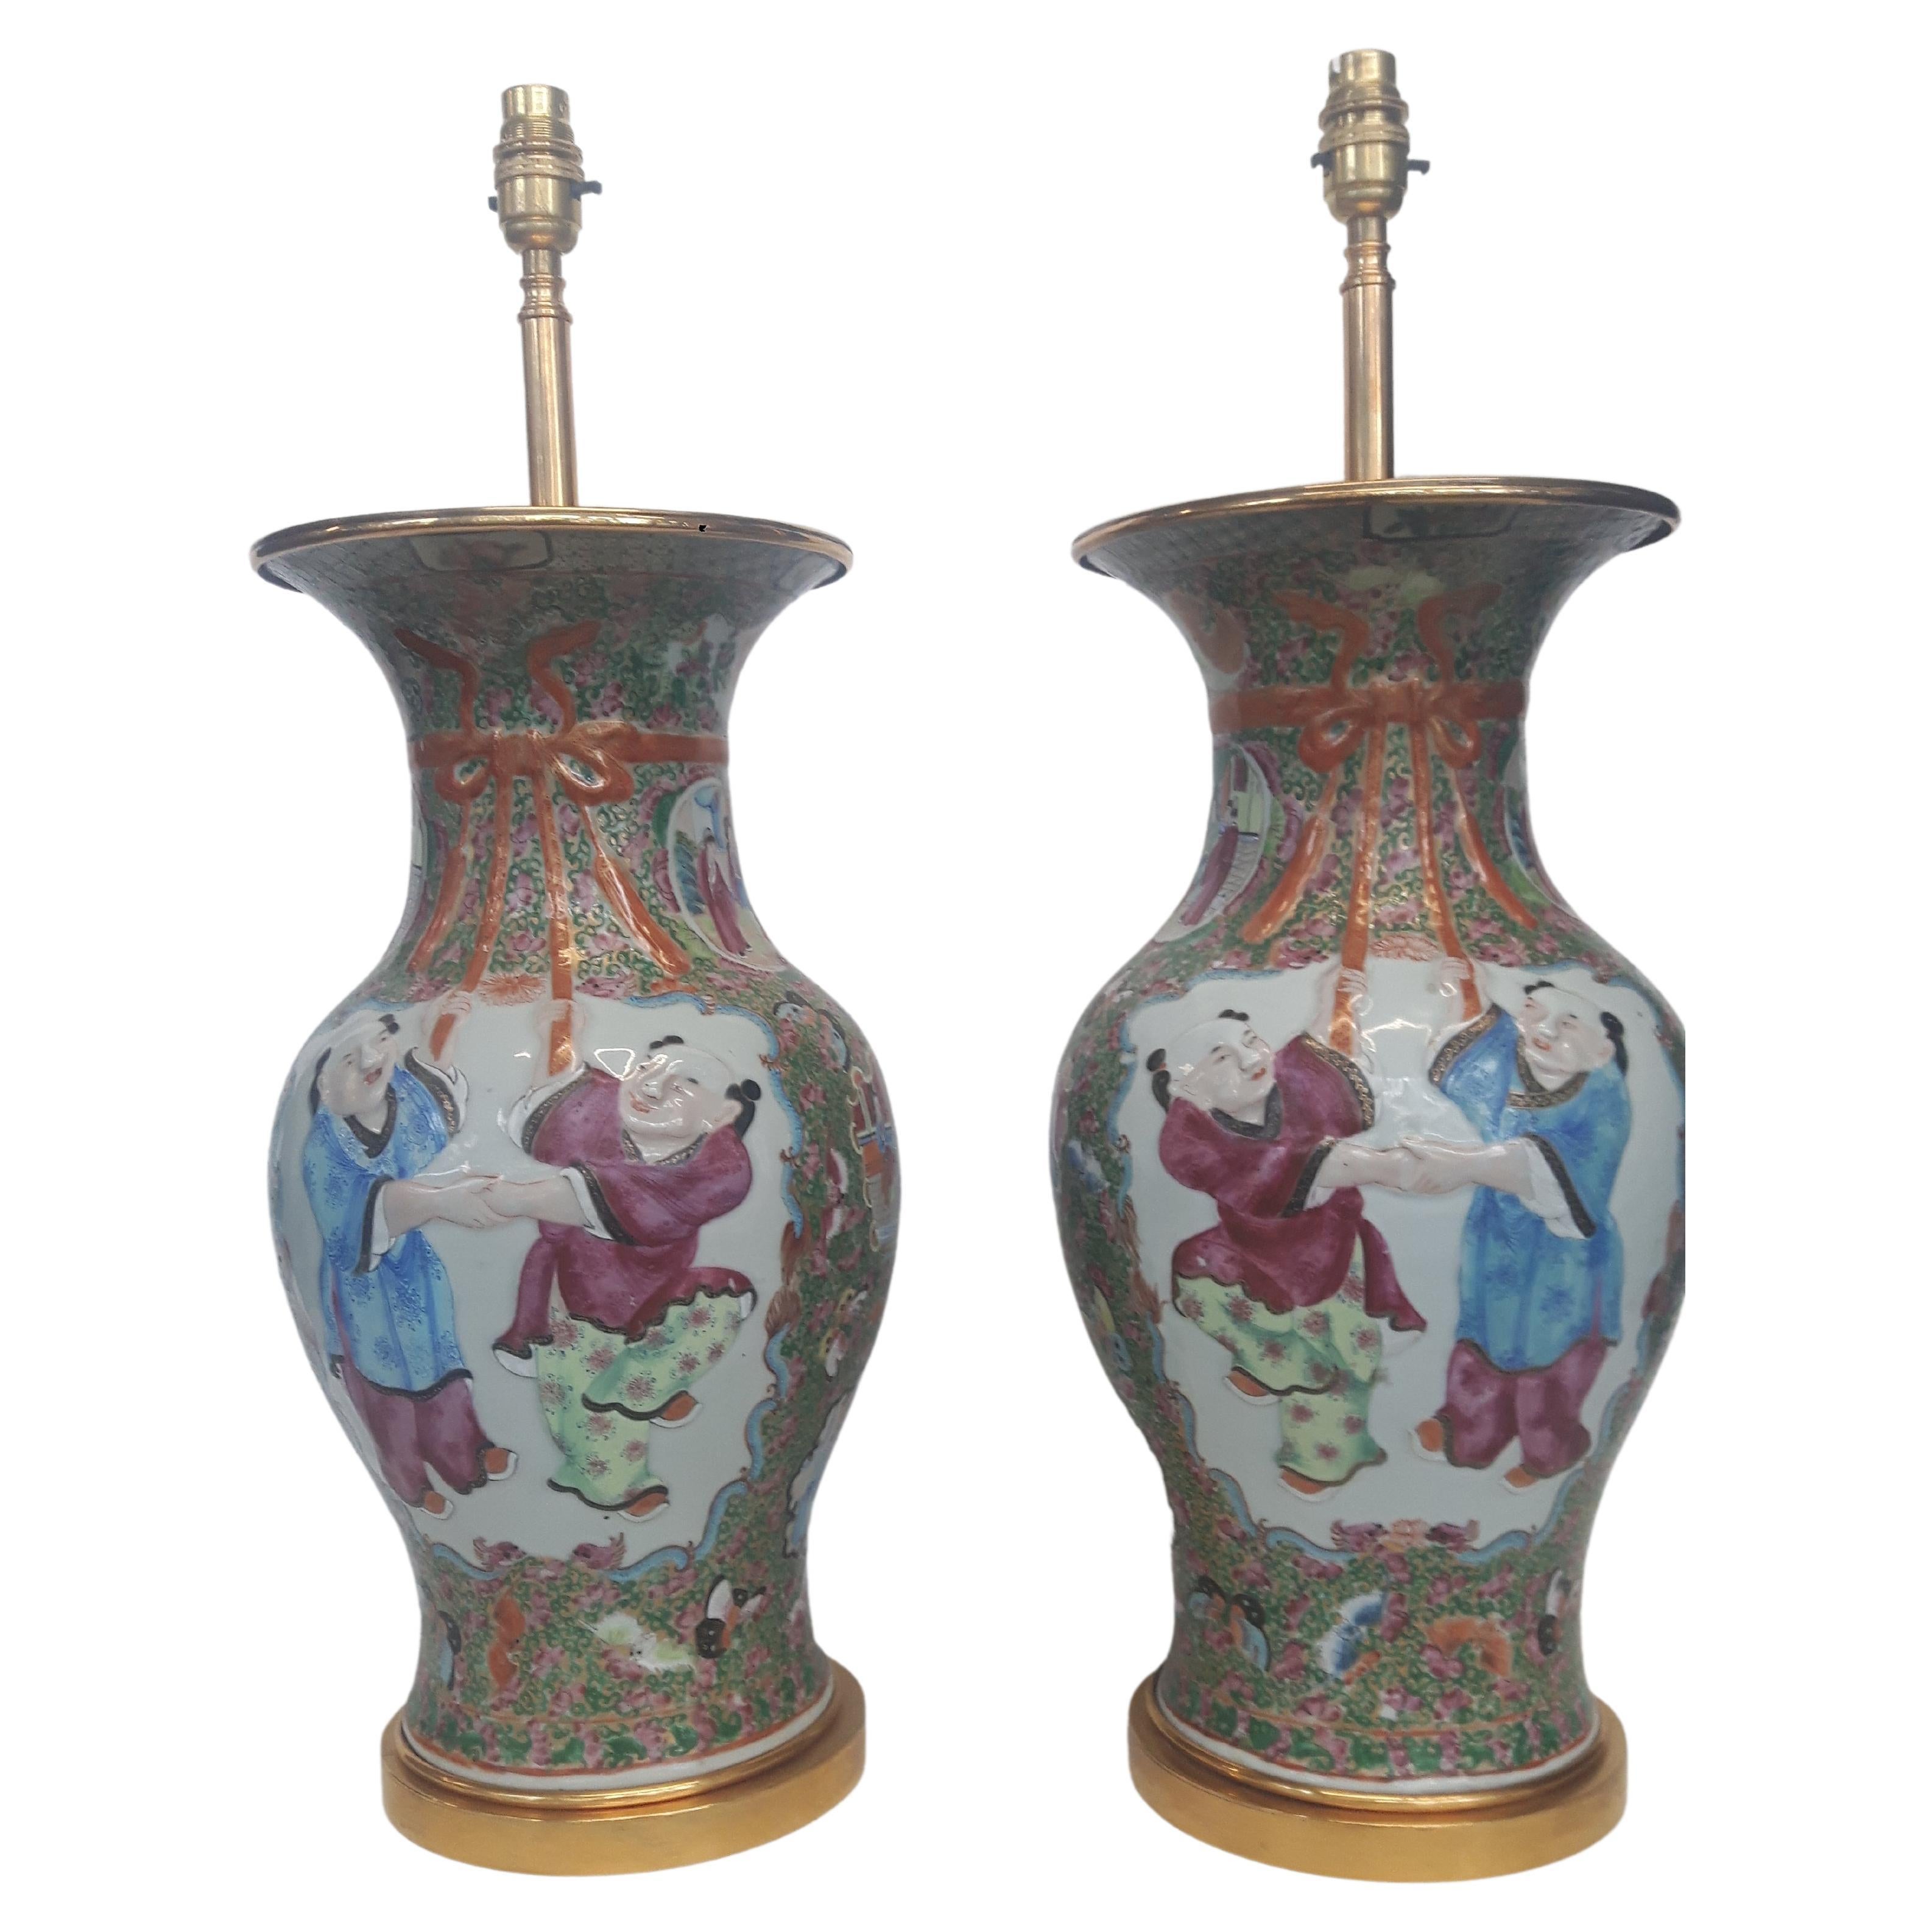 Paar Rosenmedaillon-Vasen des 19. Jahrhunderts, in Lampen umgewandelt